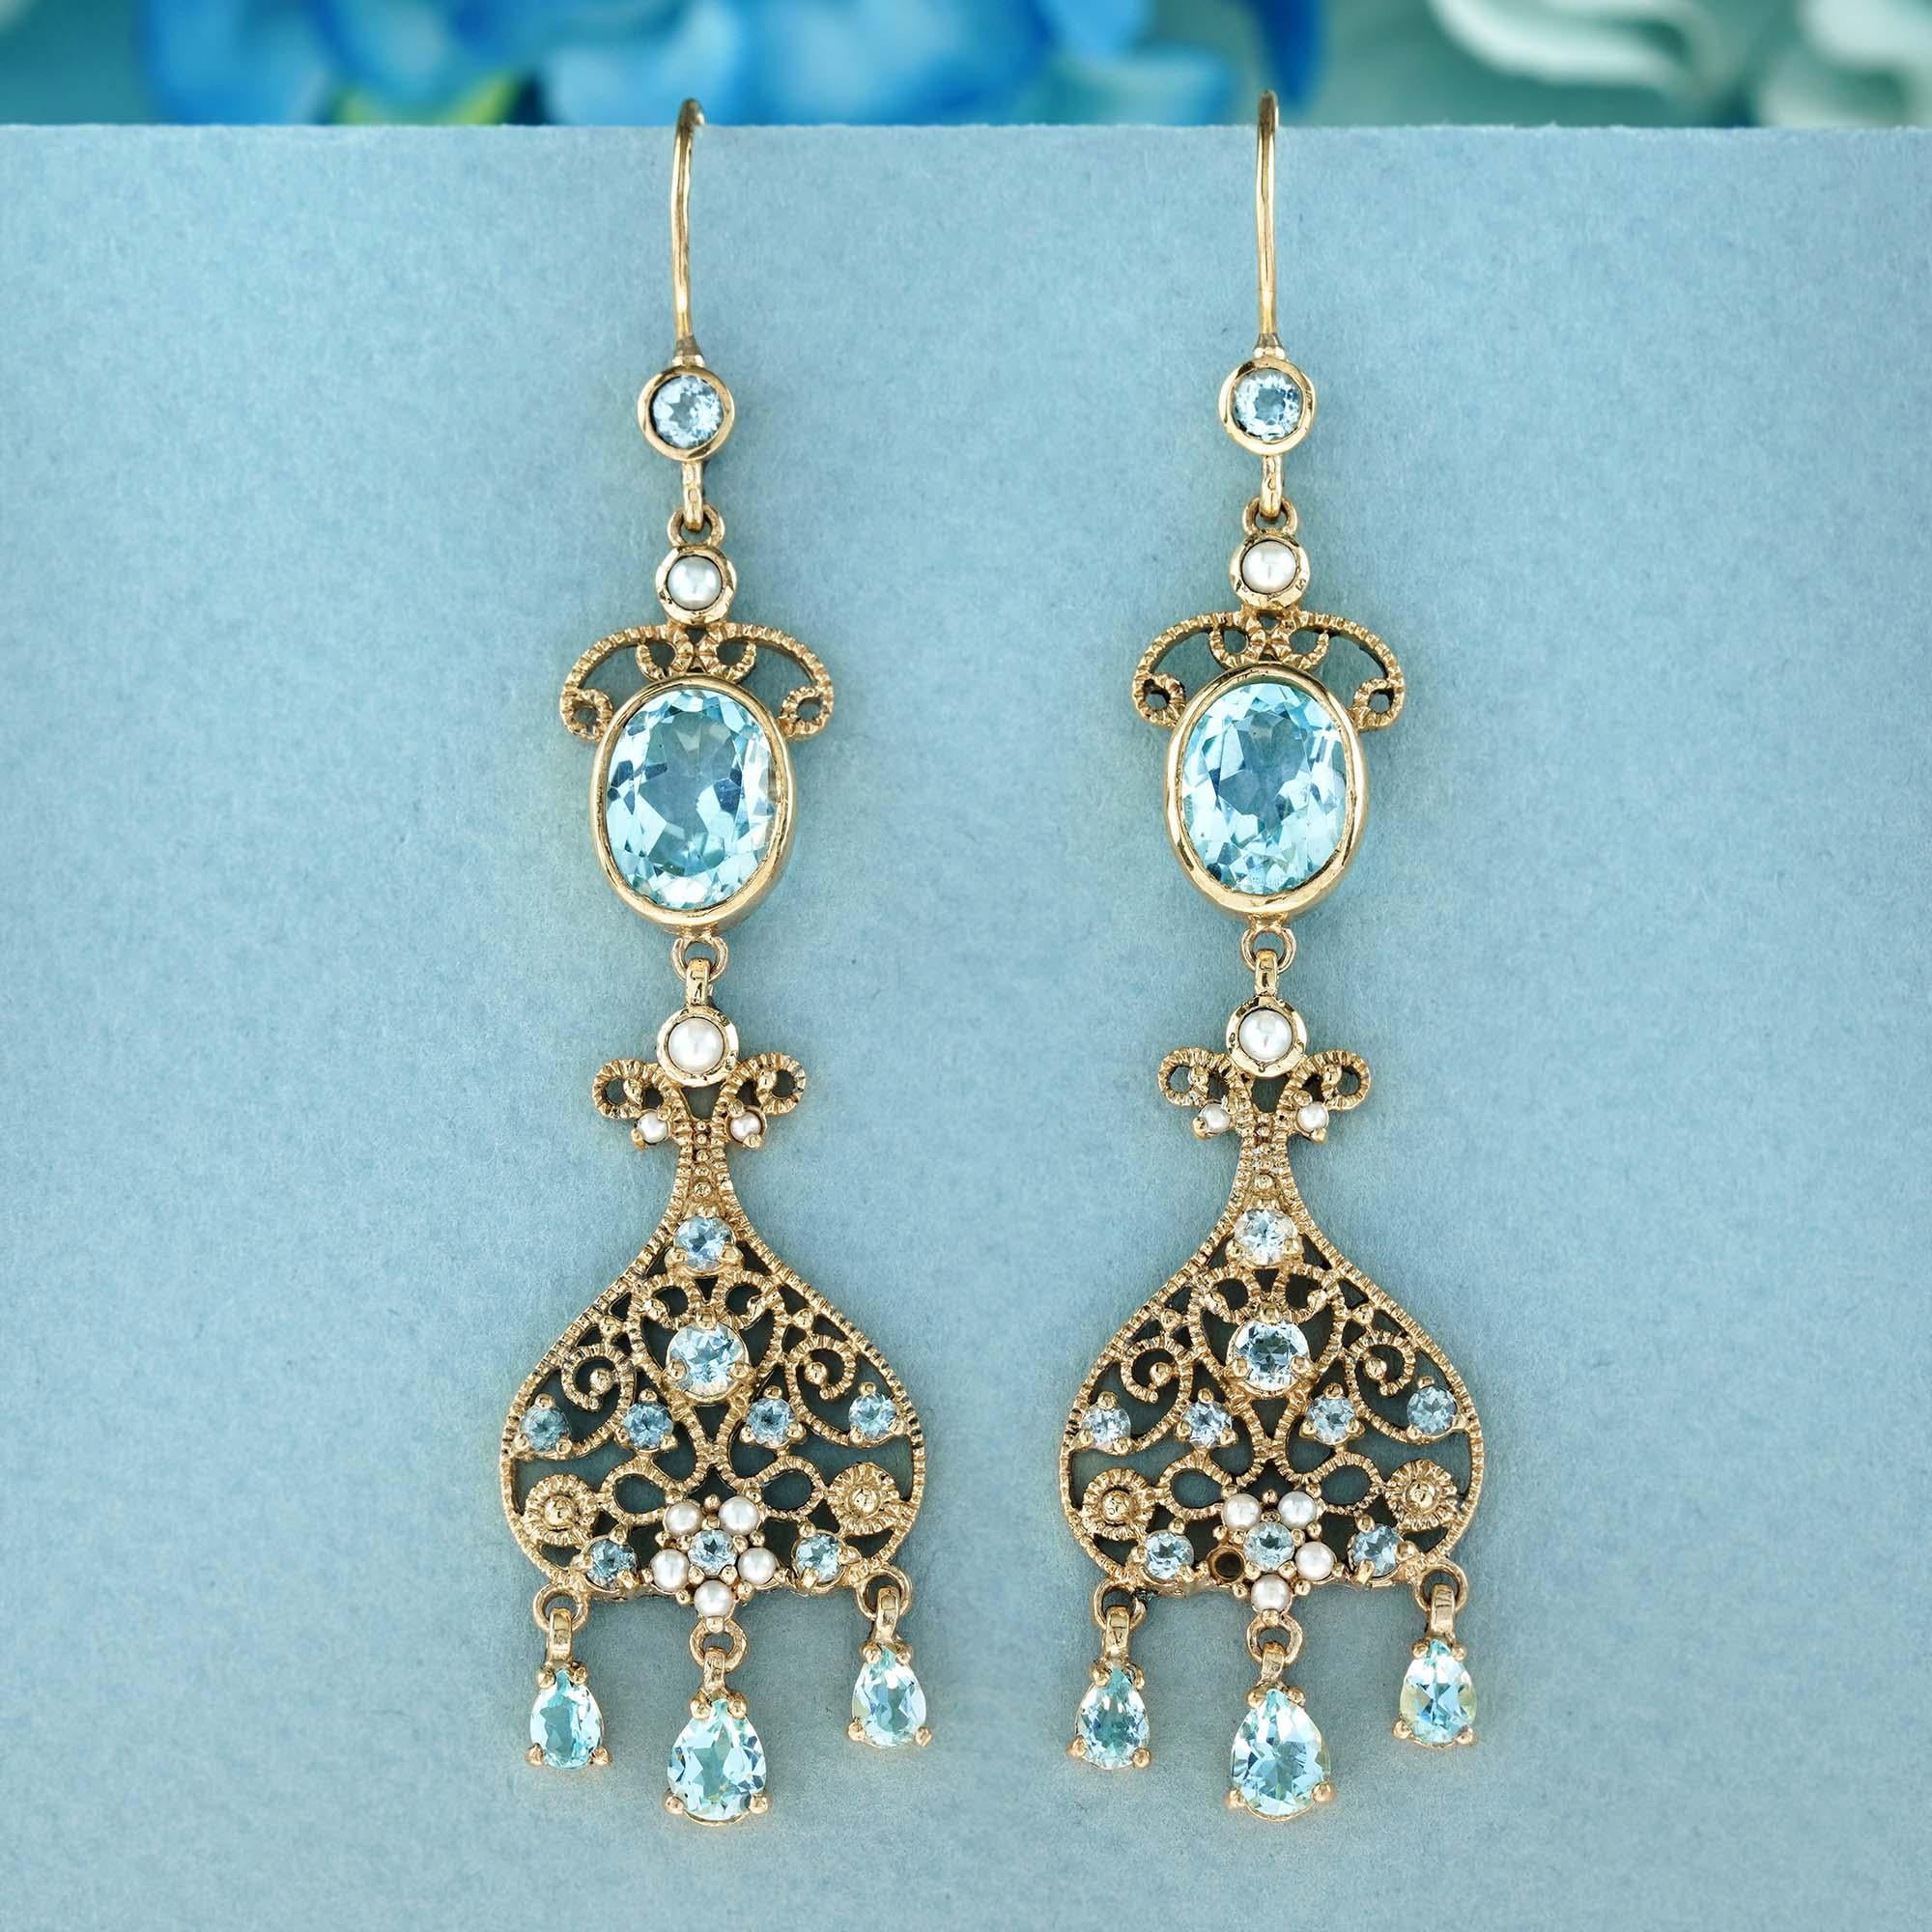 Diese exquisiten, vom Vintage-Stil inspirierten Ohrringe sind mit ovalen blauen Topas-Edelsteinen und schimmernden Perlen verziert, die elegant in Gelbgold mit feiner Maserung gefasst sind. Die ovalen Topassteine haben einen atemberaubend klaren,